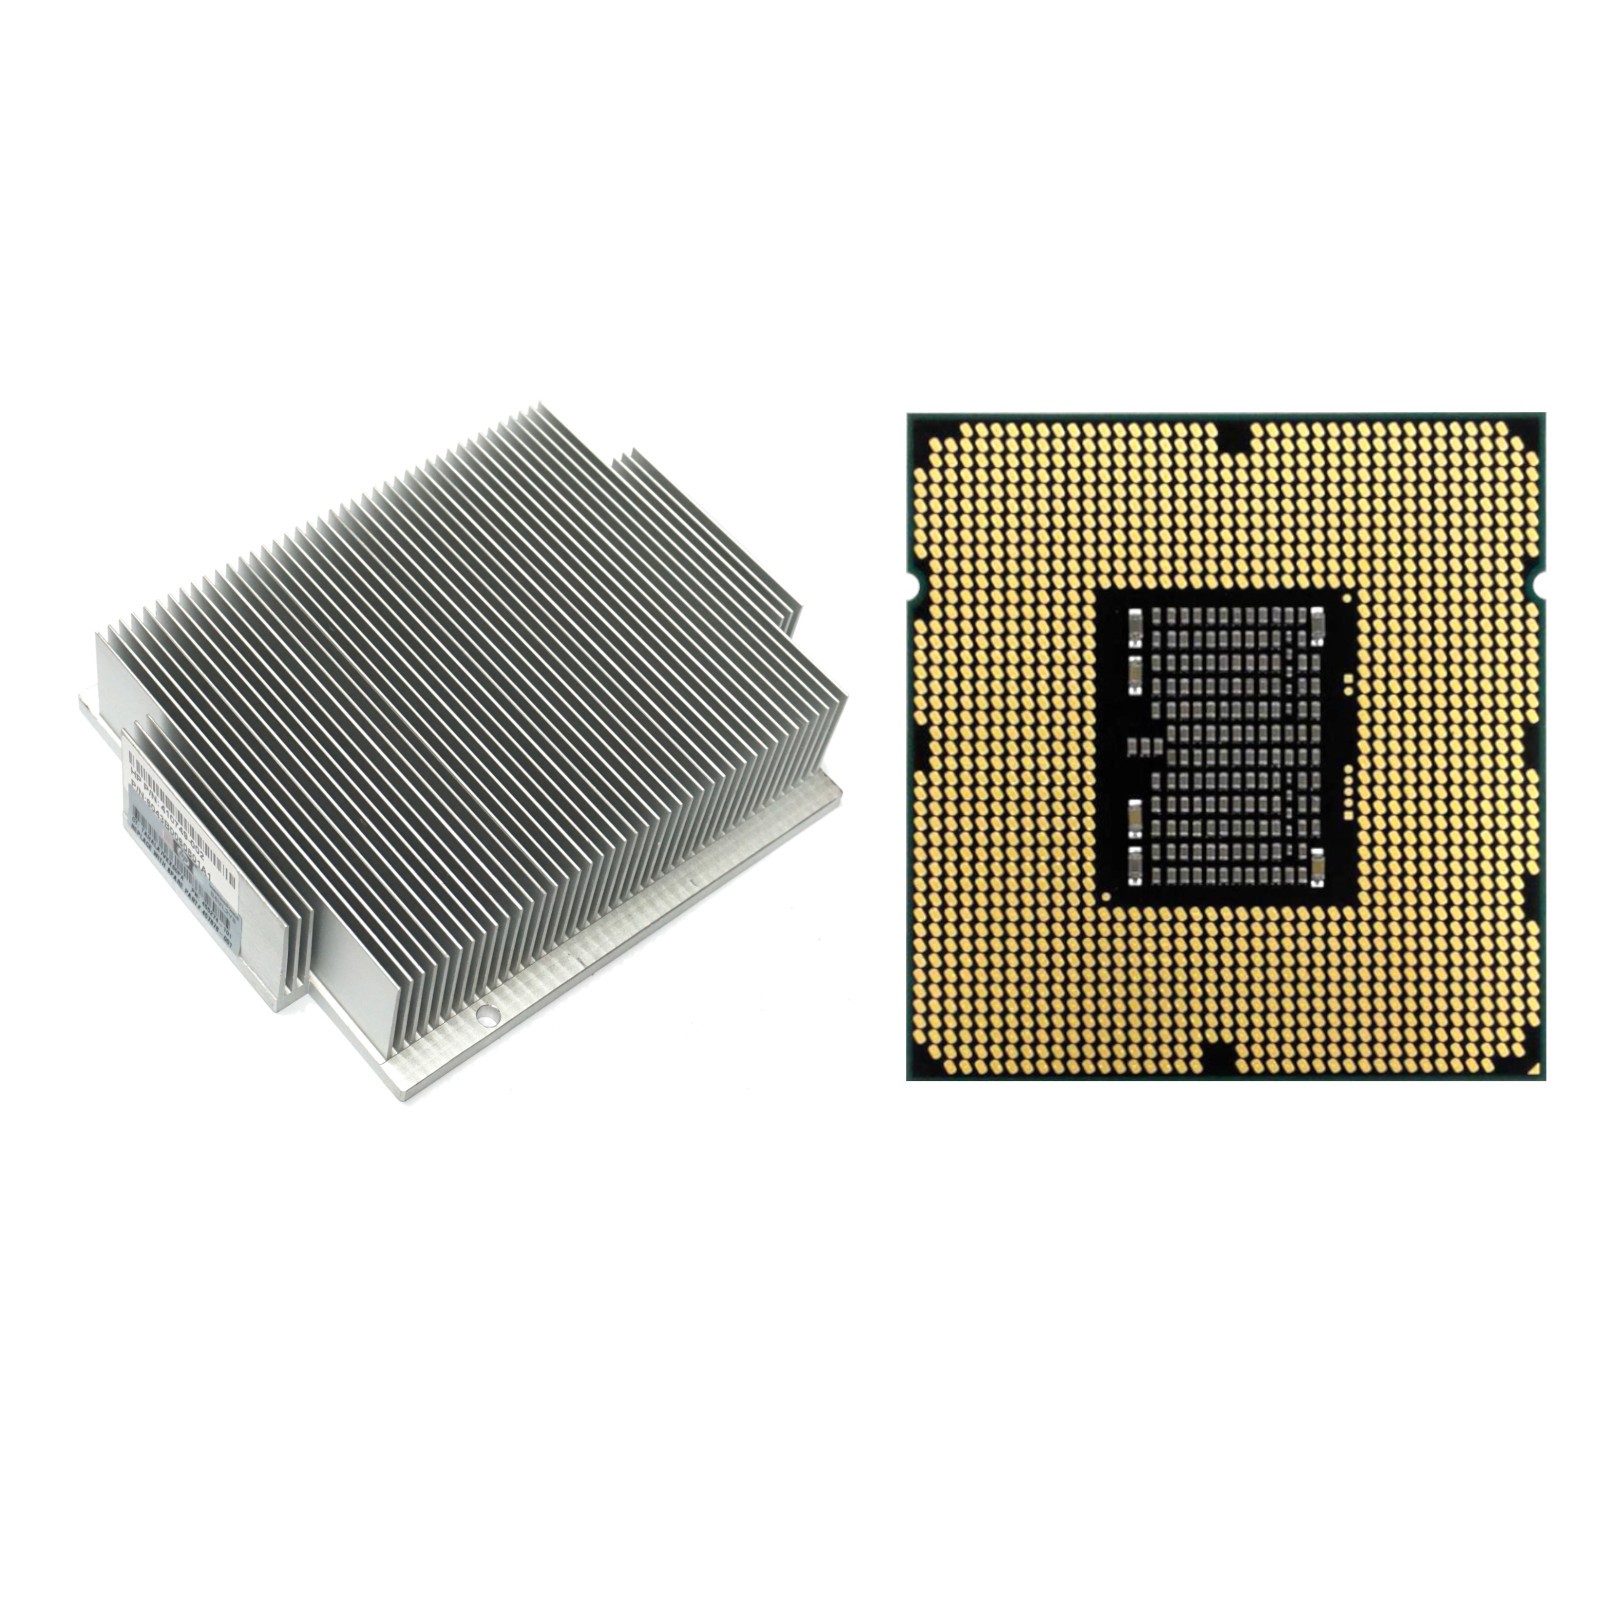 HP (435958-B21) ProLiant DL360 G5 - Intel Xeon L5320 CPU2 Kit